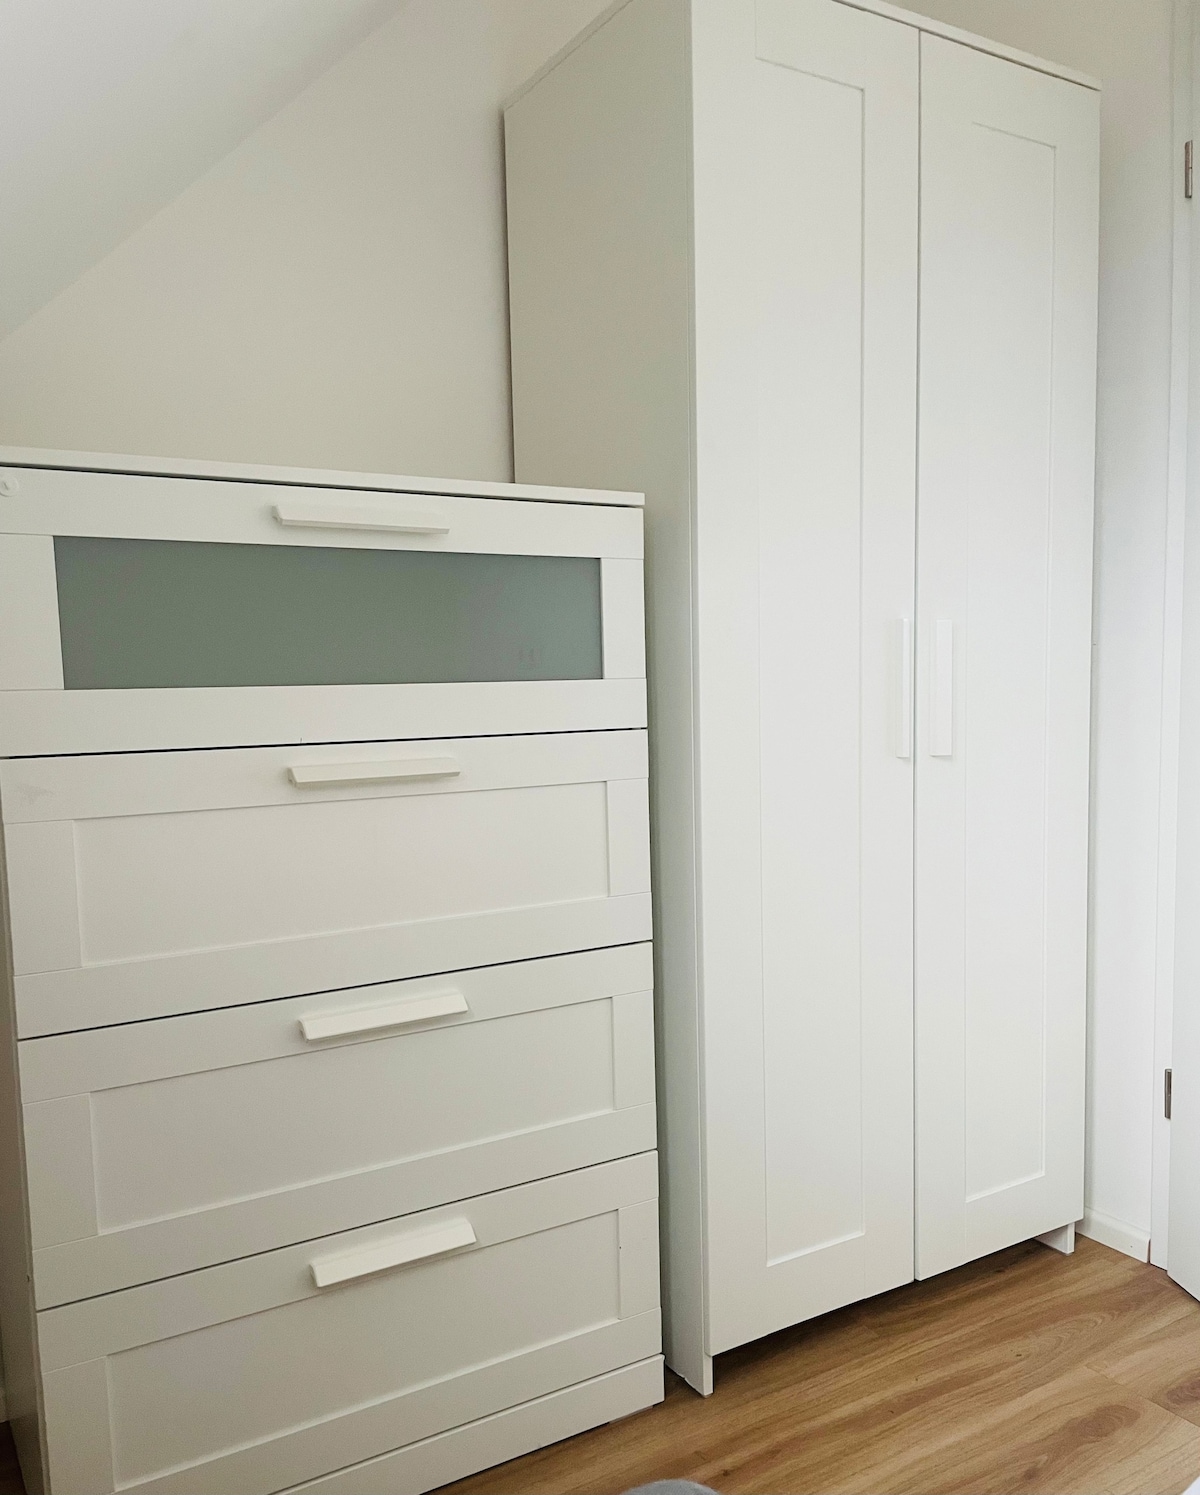 海德堡可供4位房客入住的公寓，面积42平方米（ 146019 ）